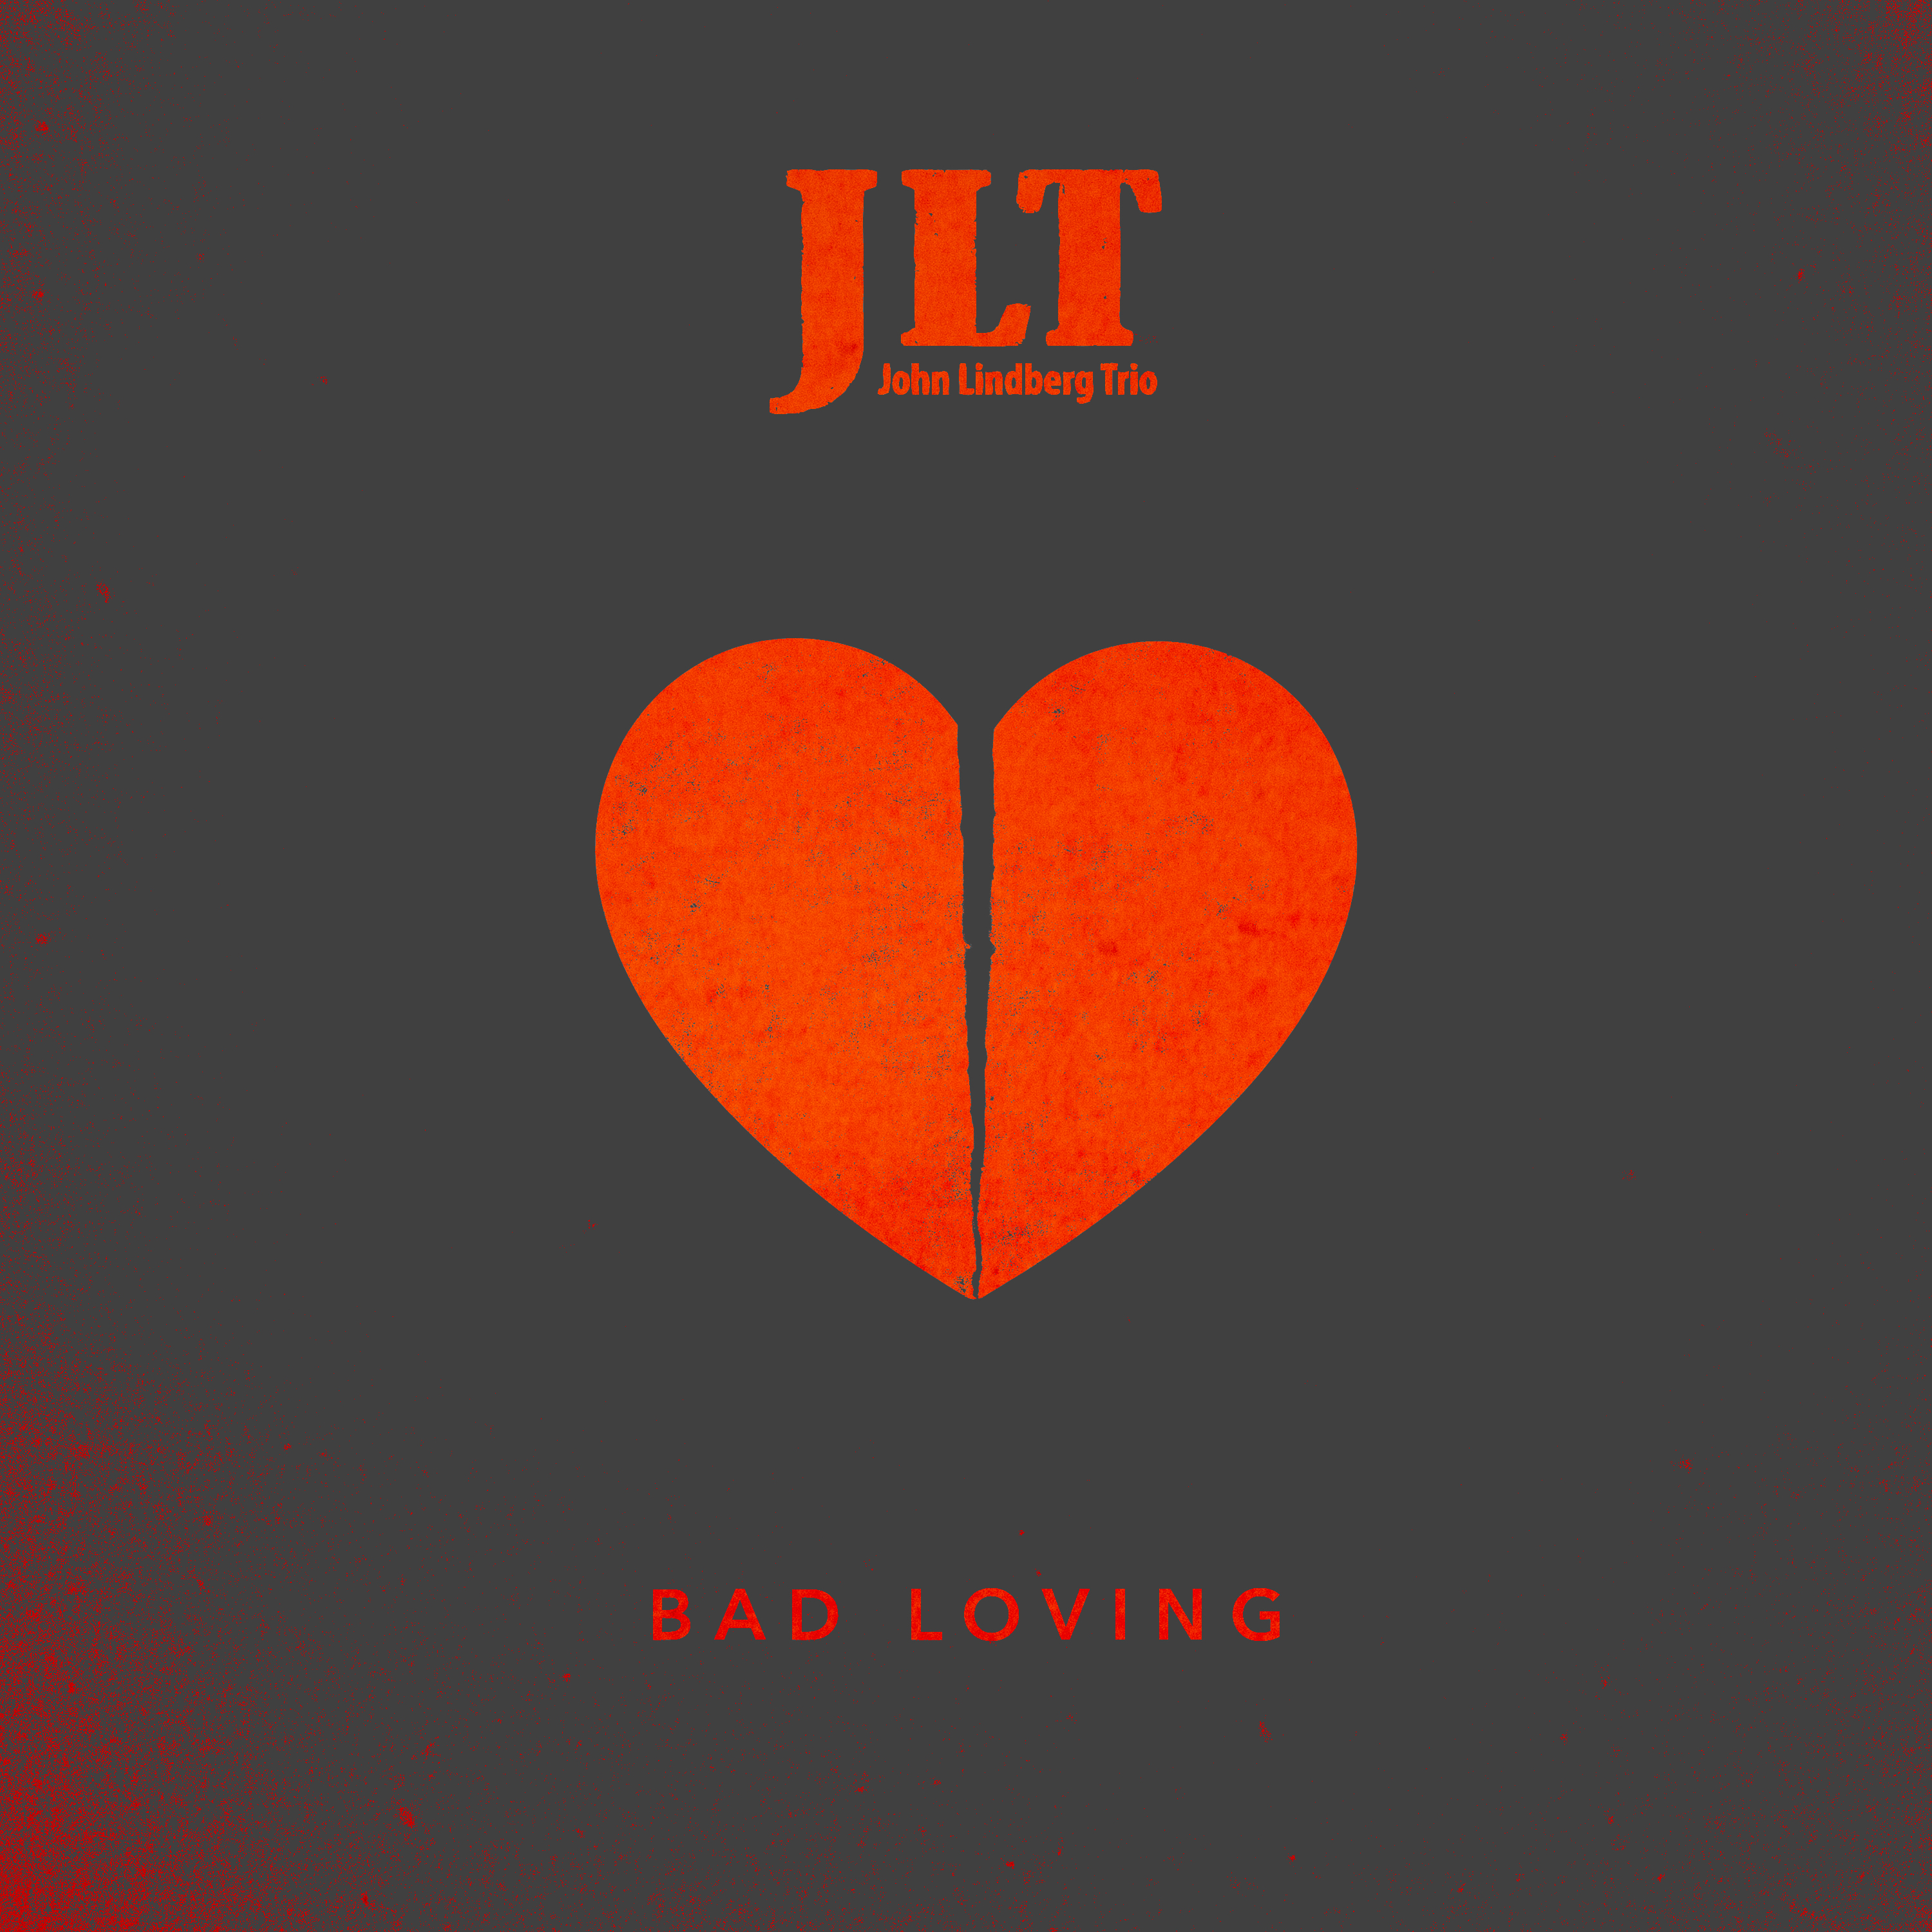 JLT Bad Loving